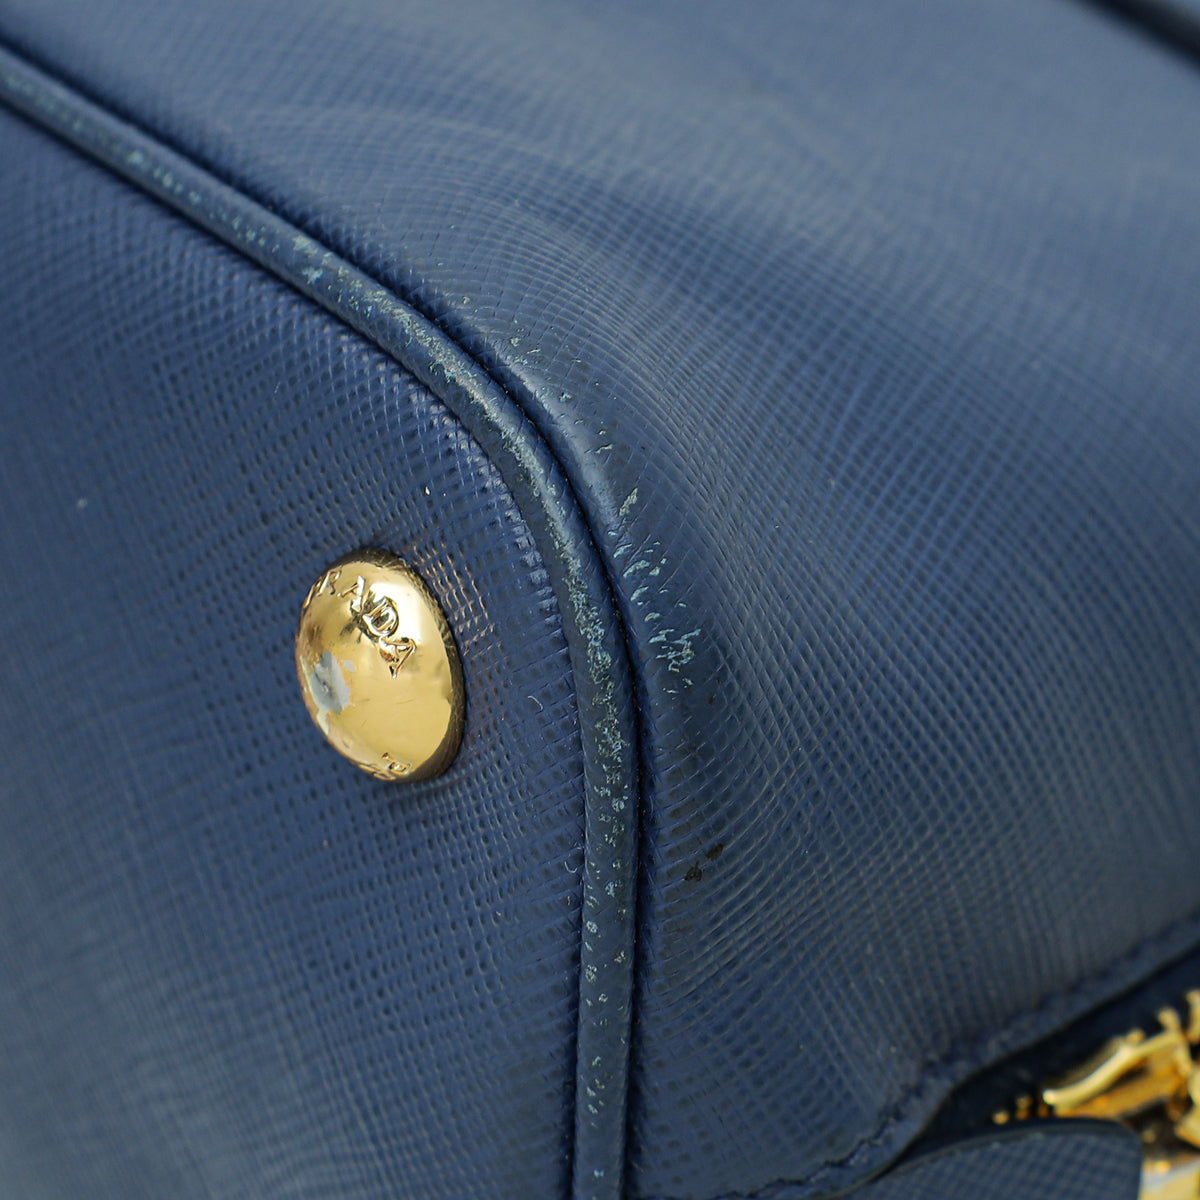 Prada Bluette Lux Promenade Small Bag